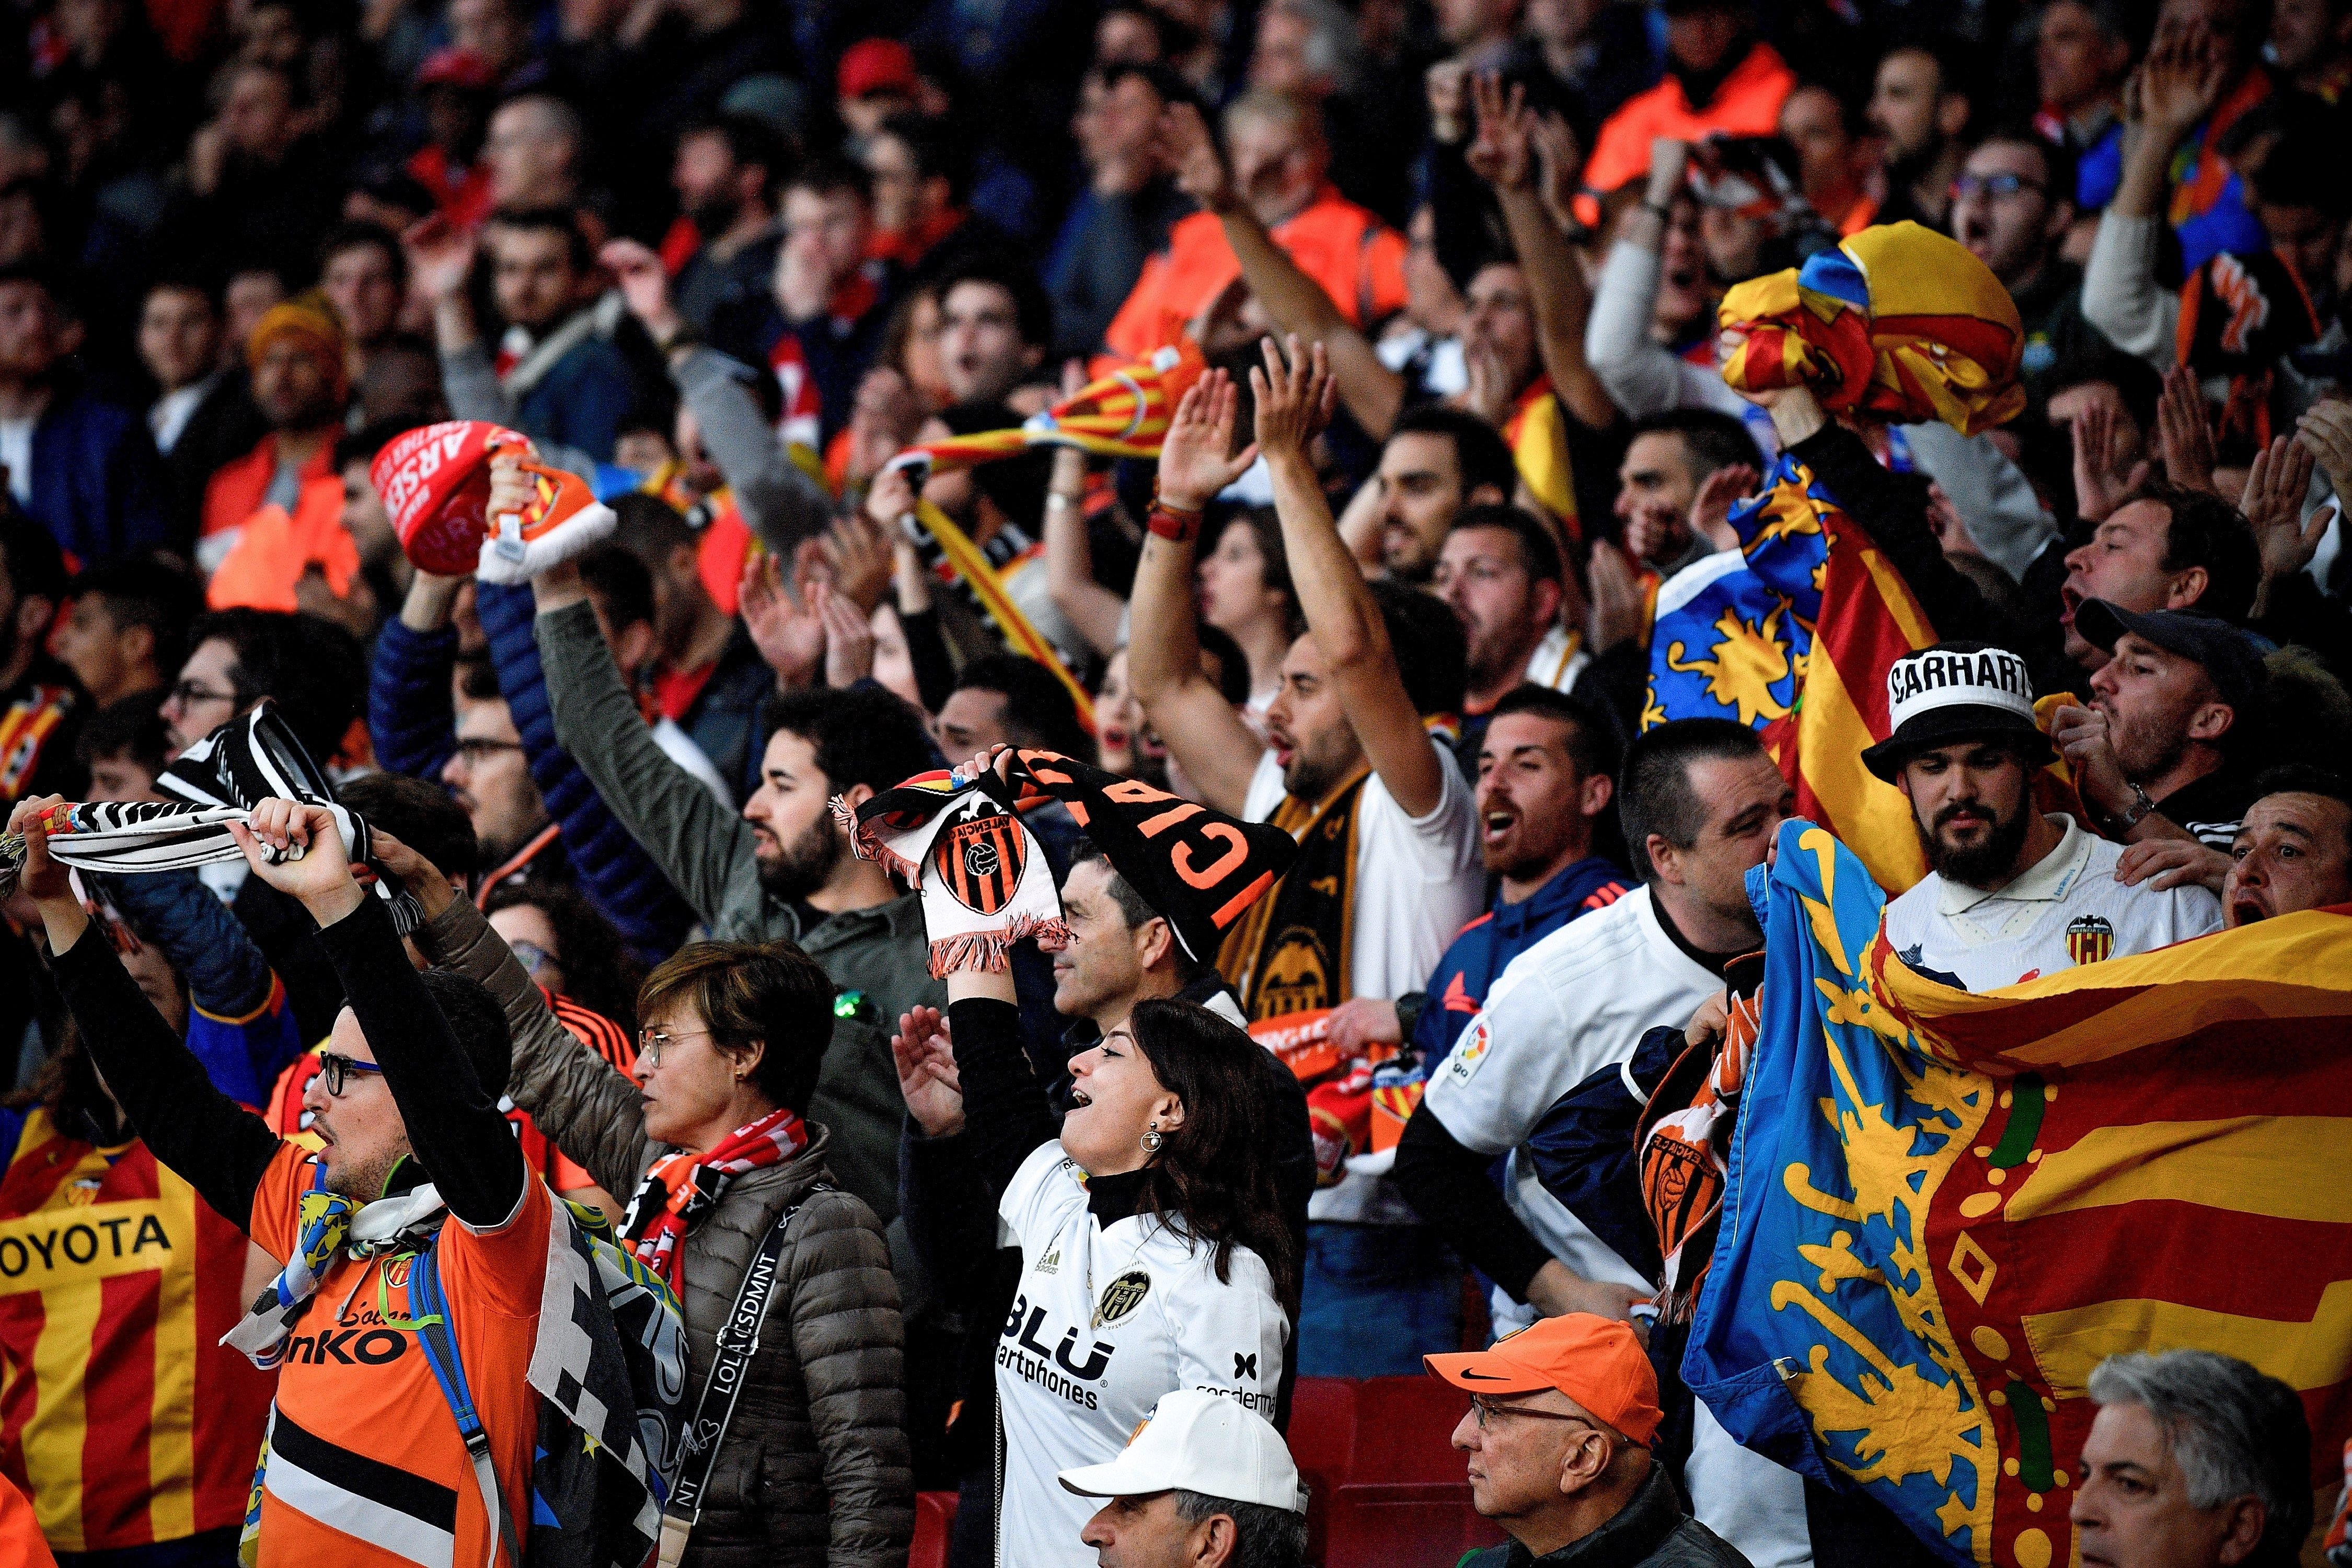 Seguidors del València fan gestos nazis i racistes a l'afició de l'Arsenal